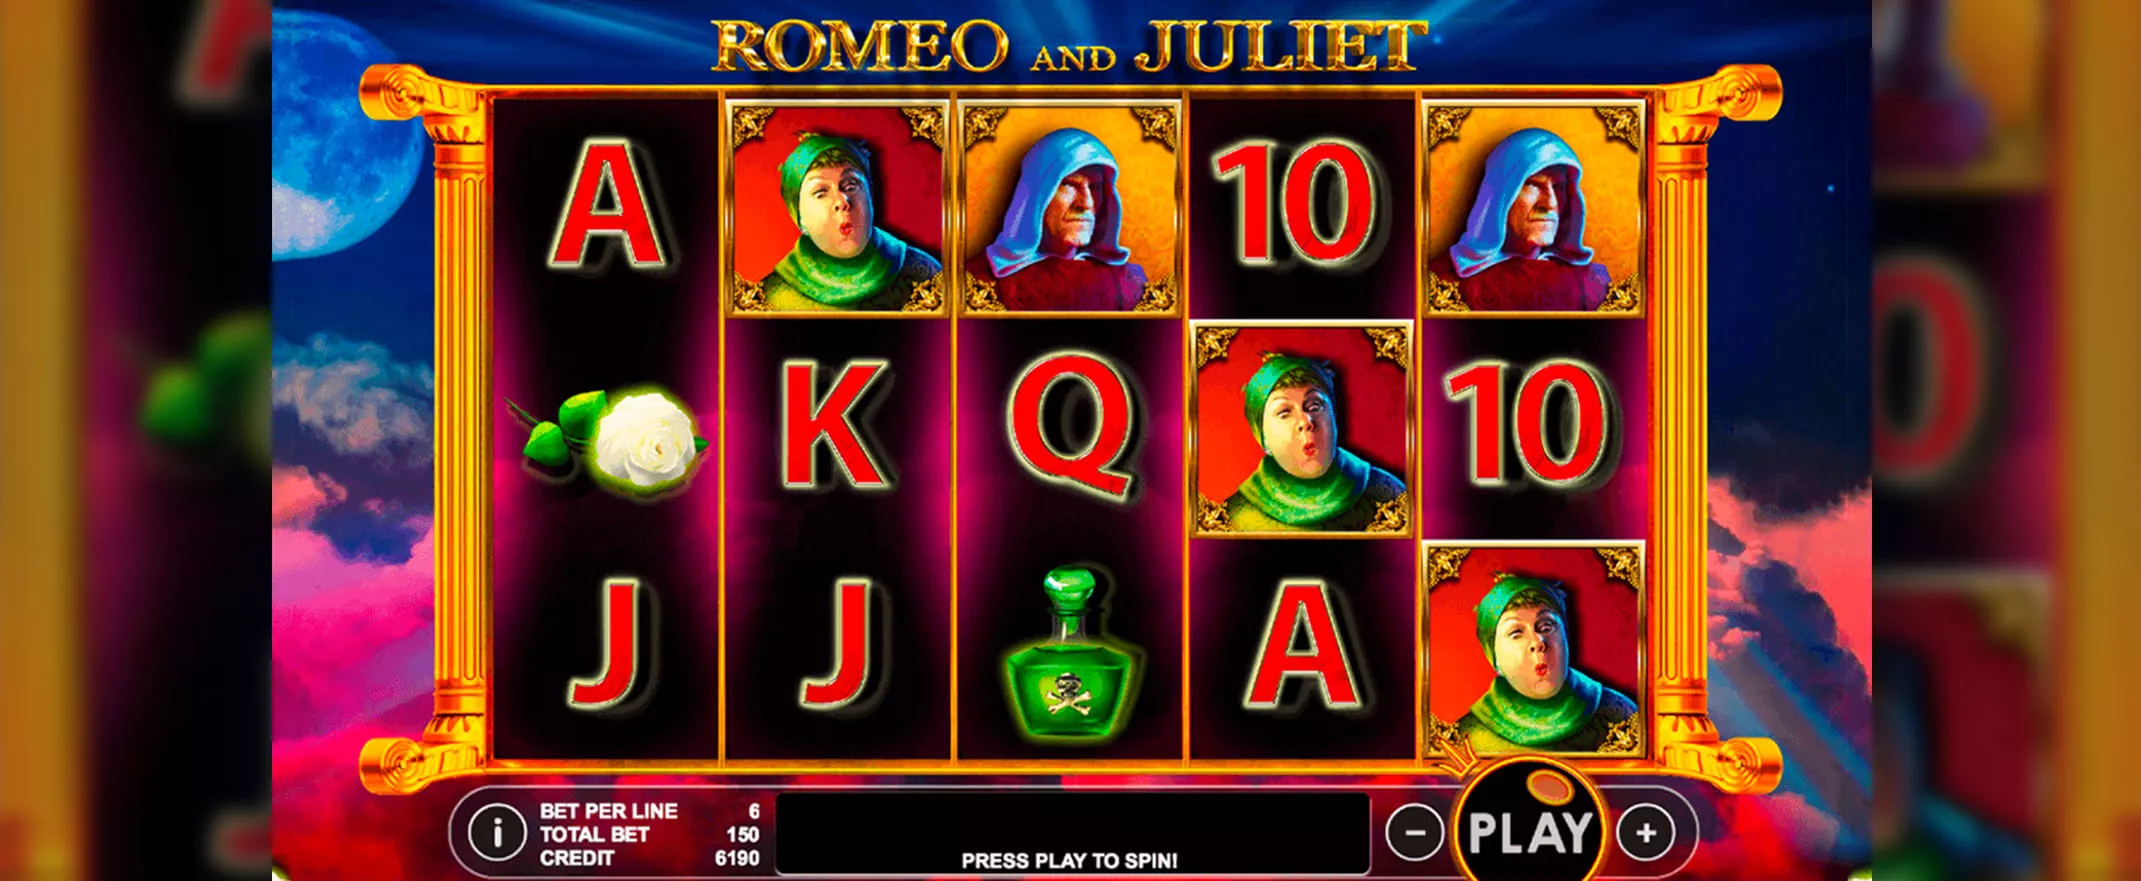 Romeo and Juliet peliautomaatti - kuva pelin keloista ja symboleista